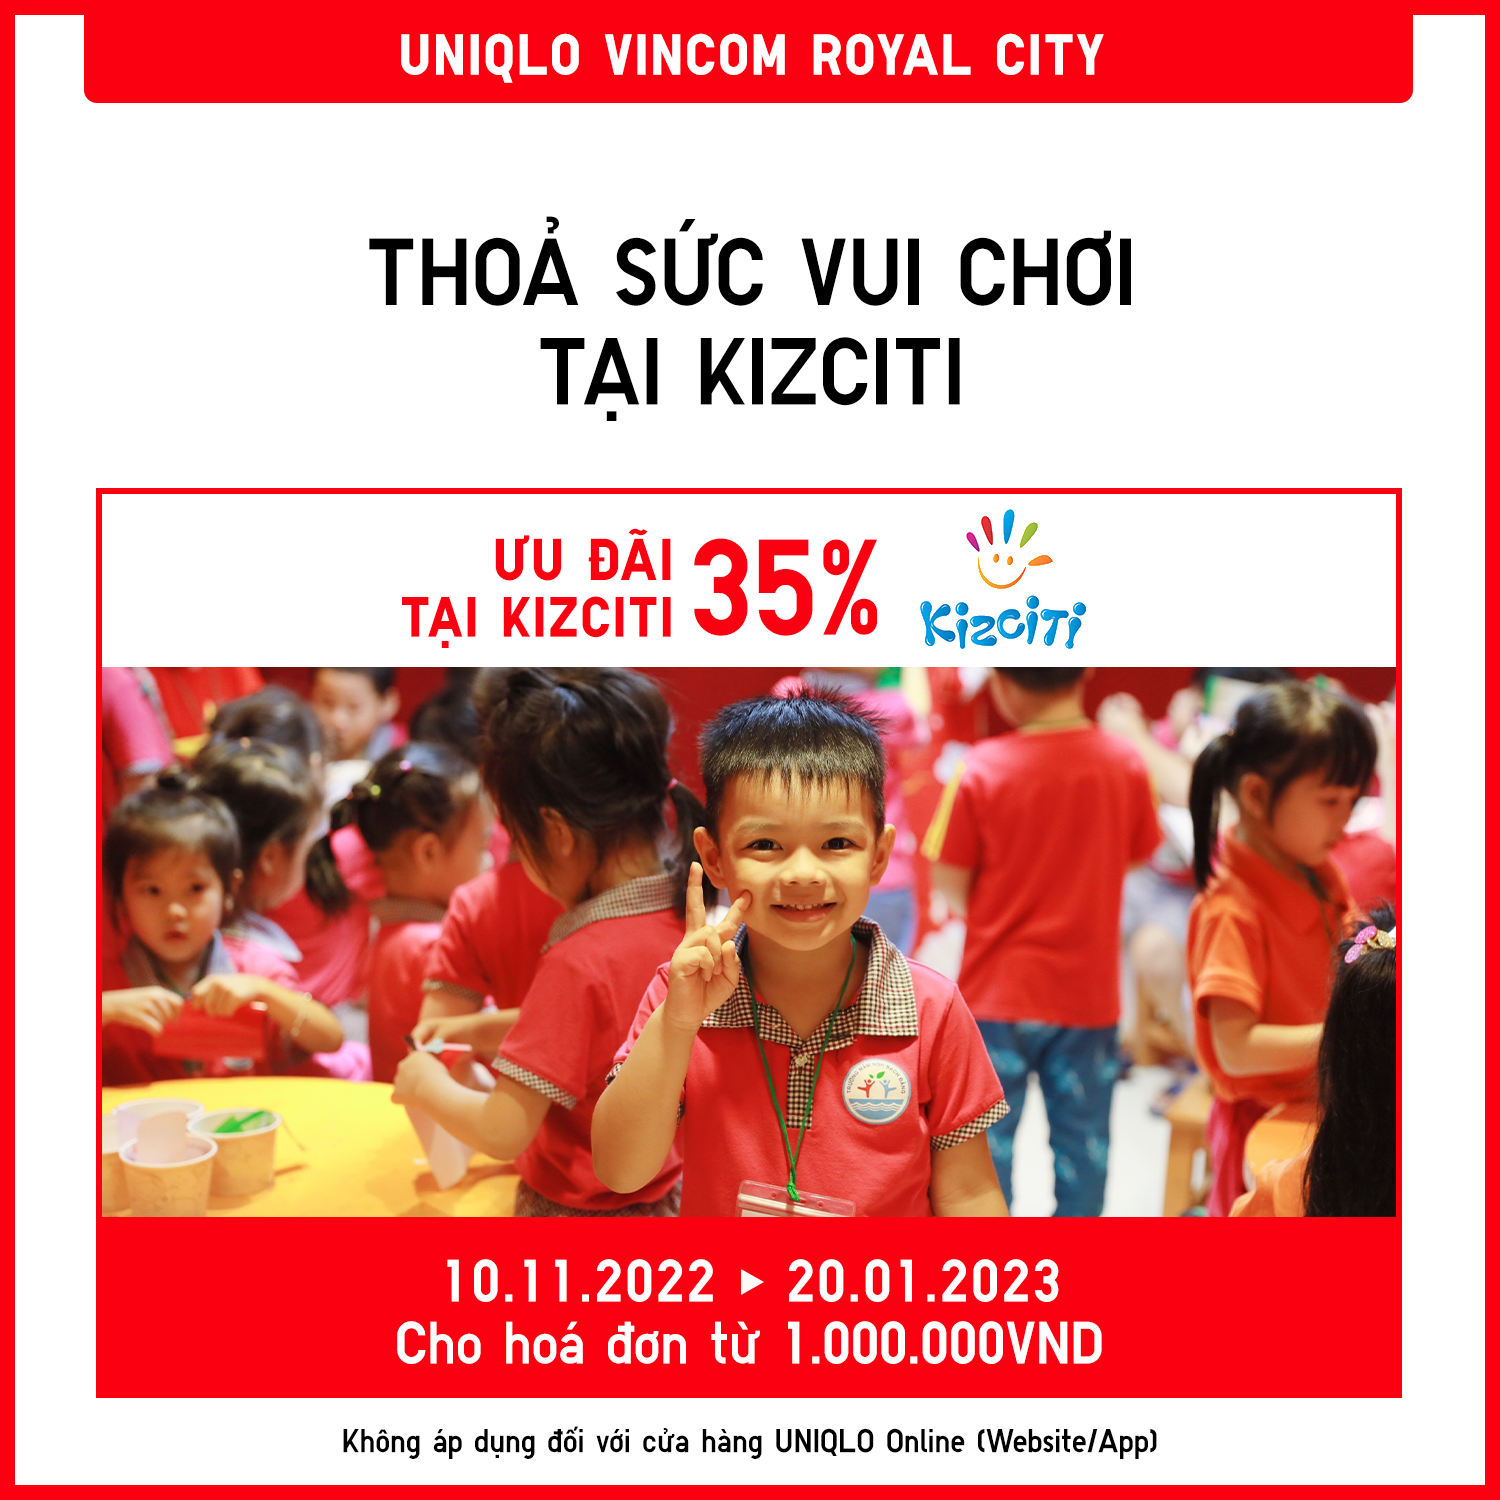 Uniqlo Vietnam  MỪNG KHAI TRƯƠNG 3 CỬA HÀNG UNIQLO MỚI  Facebook